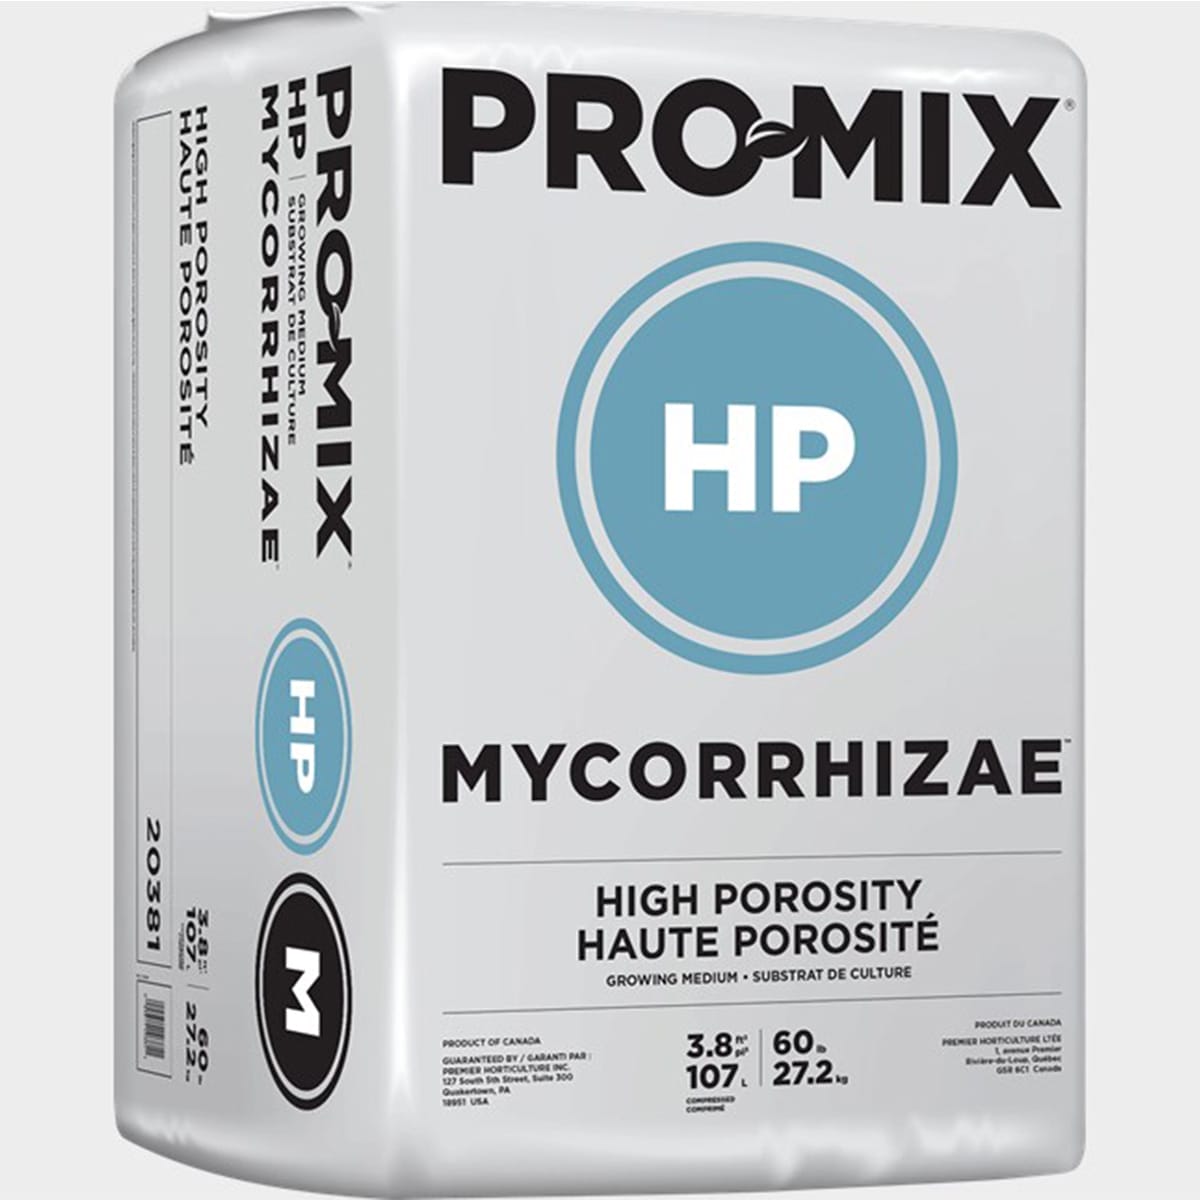 Pro Mix HP Mycorrhizae 3.8cuft